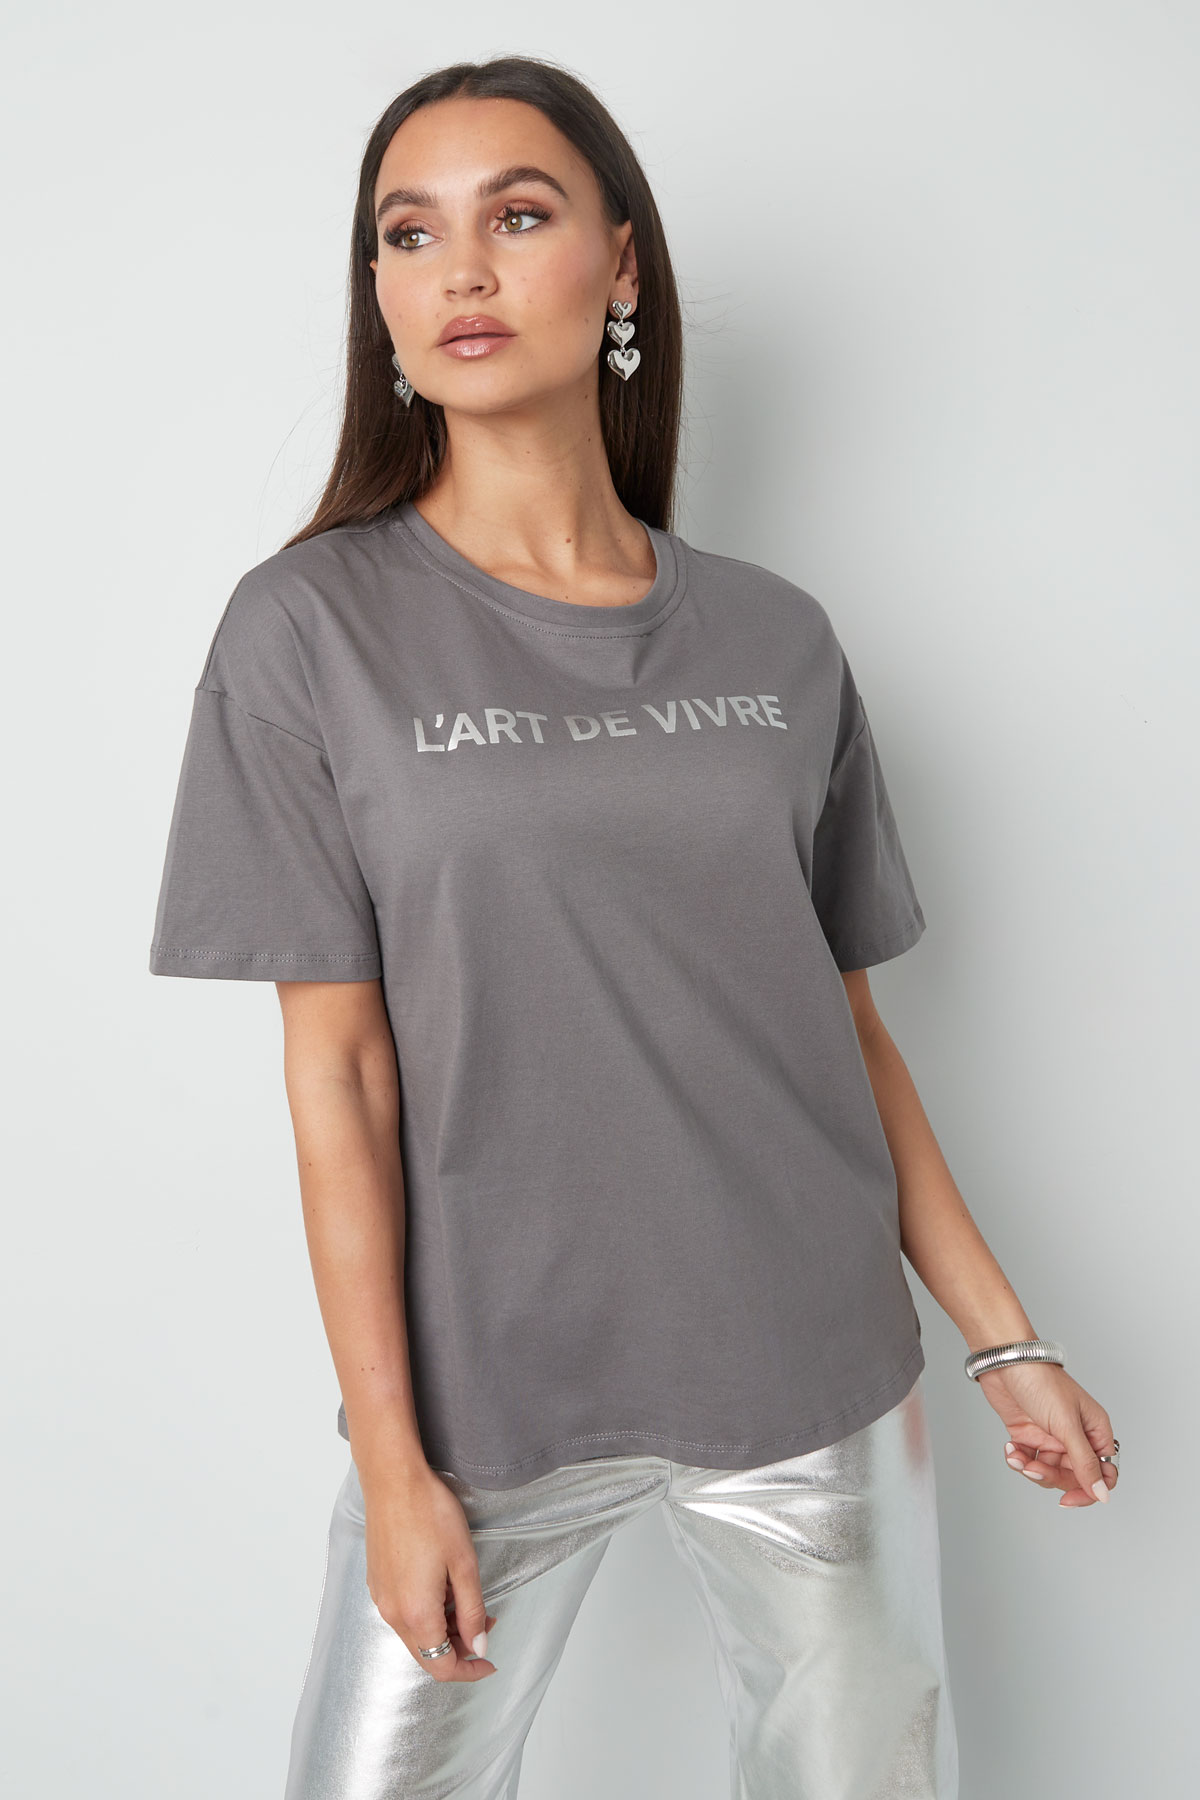 T-shirt l'art de vivre - grigio argento Immagine2